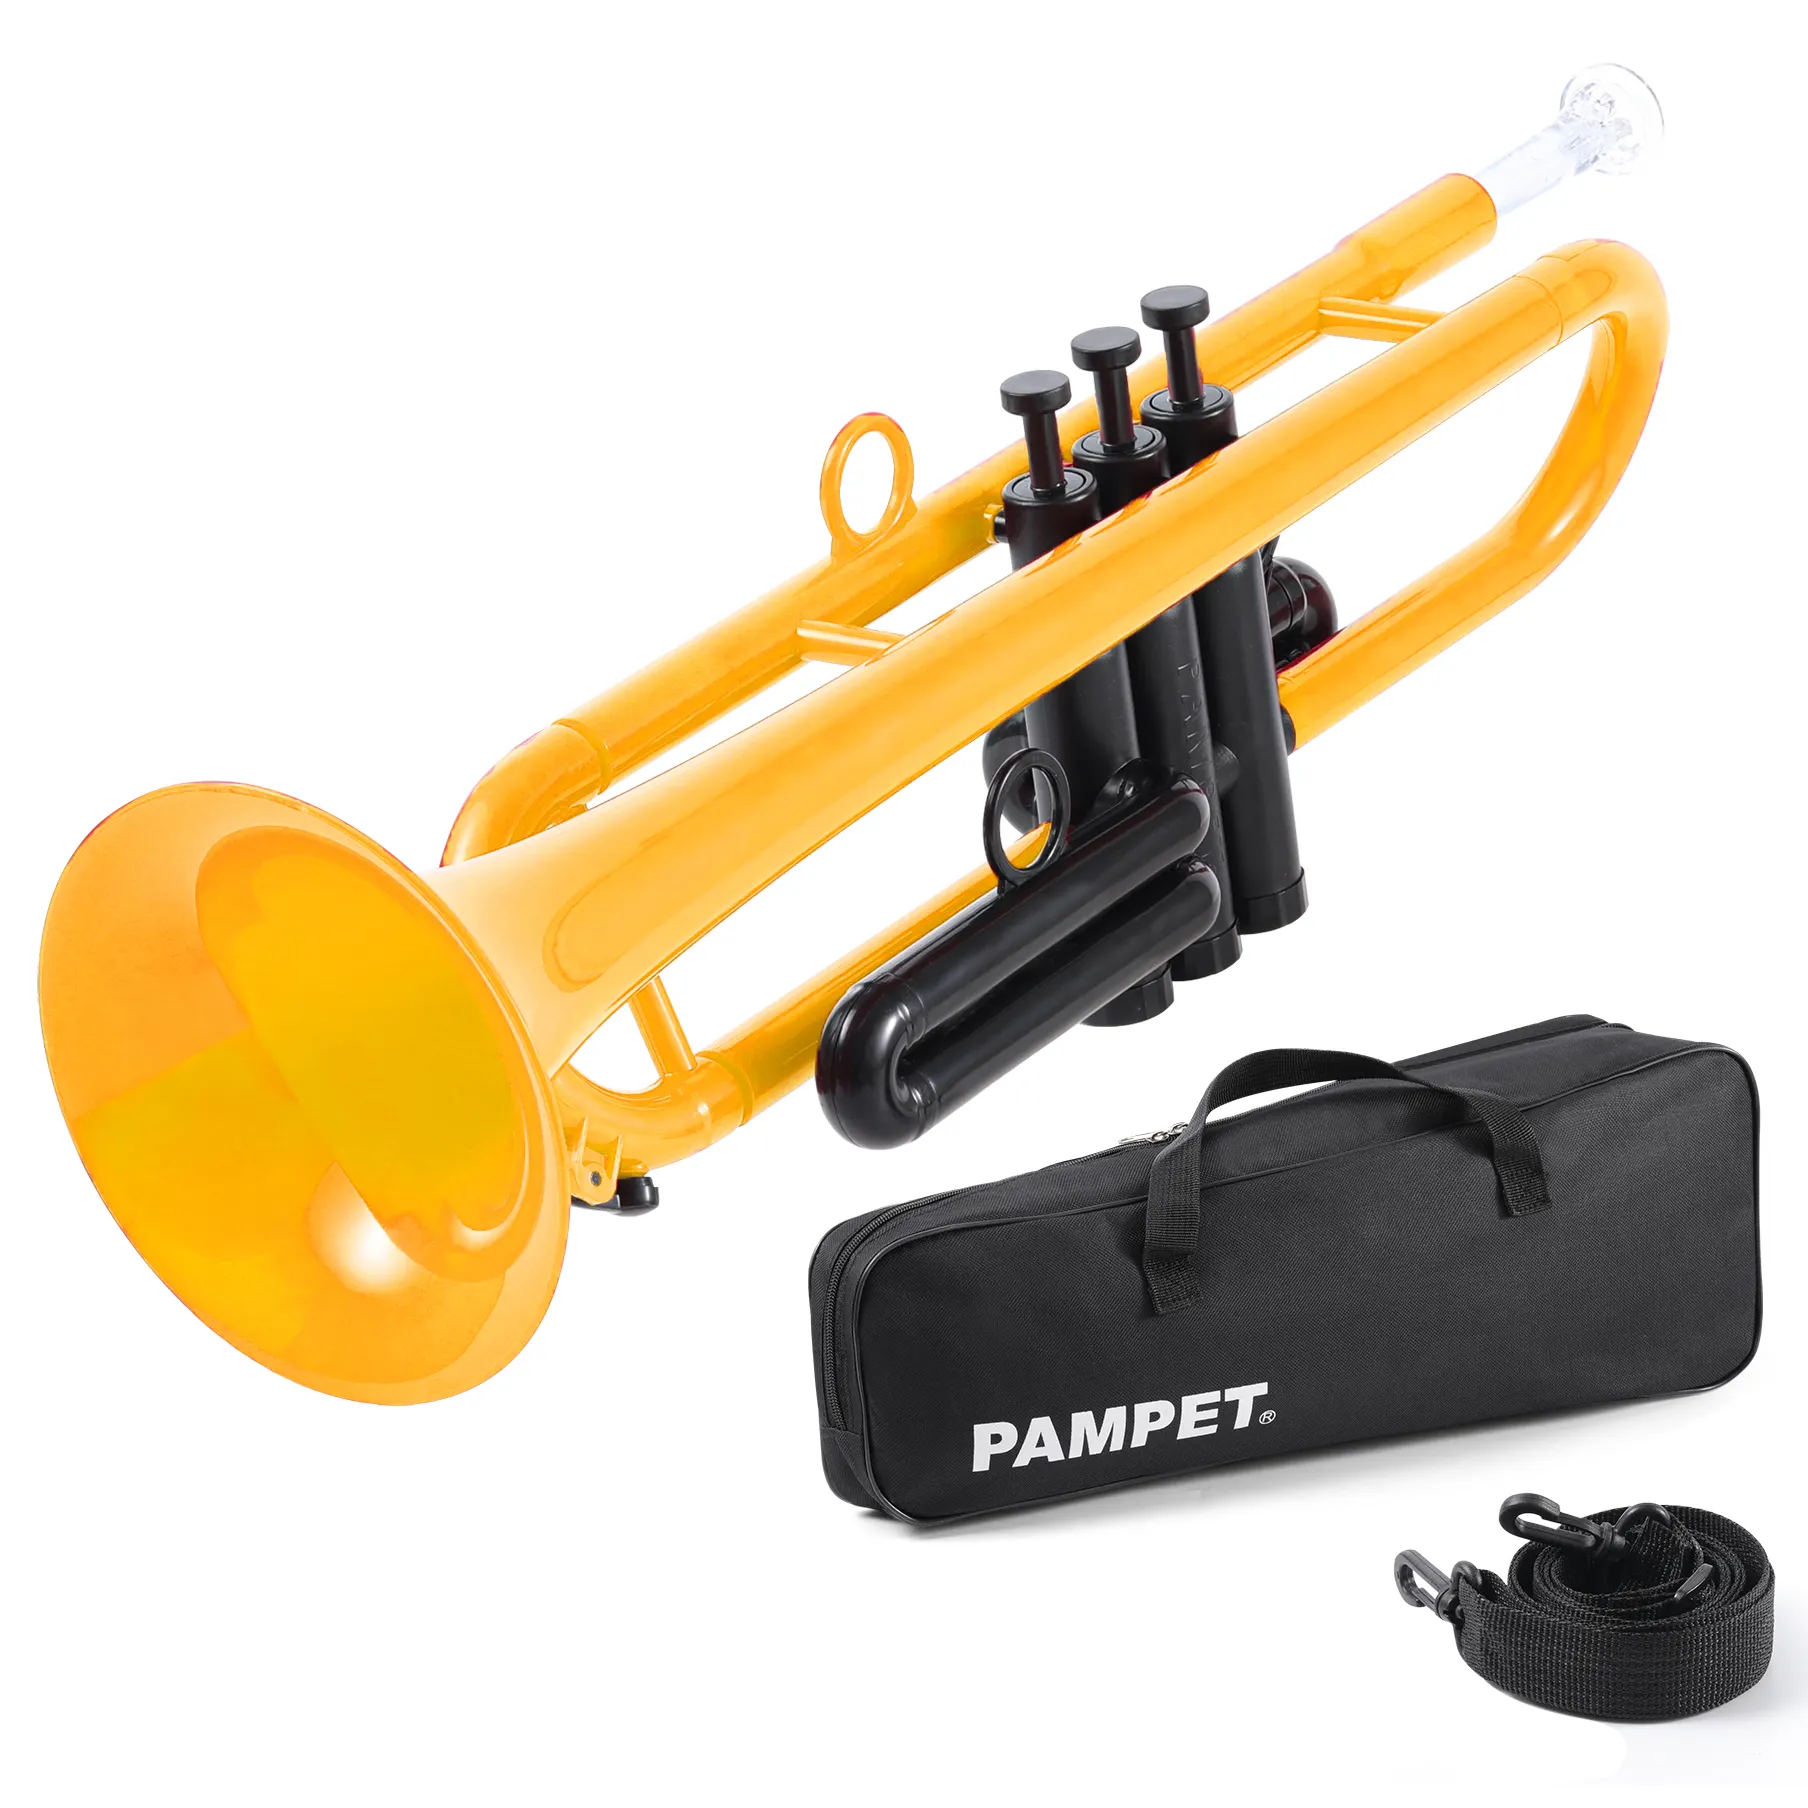 Factory Direct OEM Kunststoff Trompeten instrument C Schlüssel für Anfänger Professional mit Trage tasche und Mundstücken